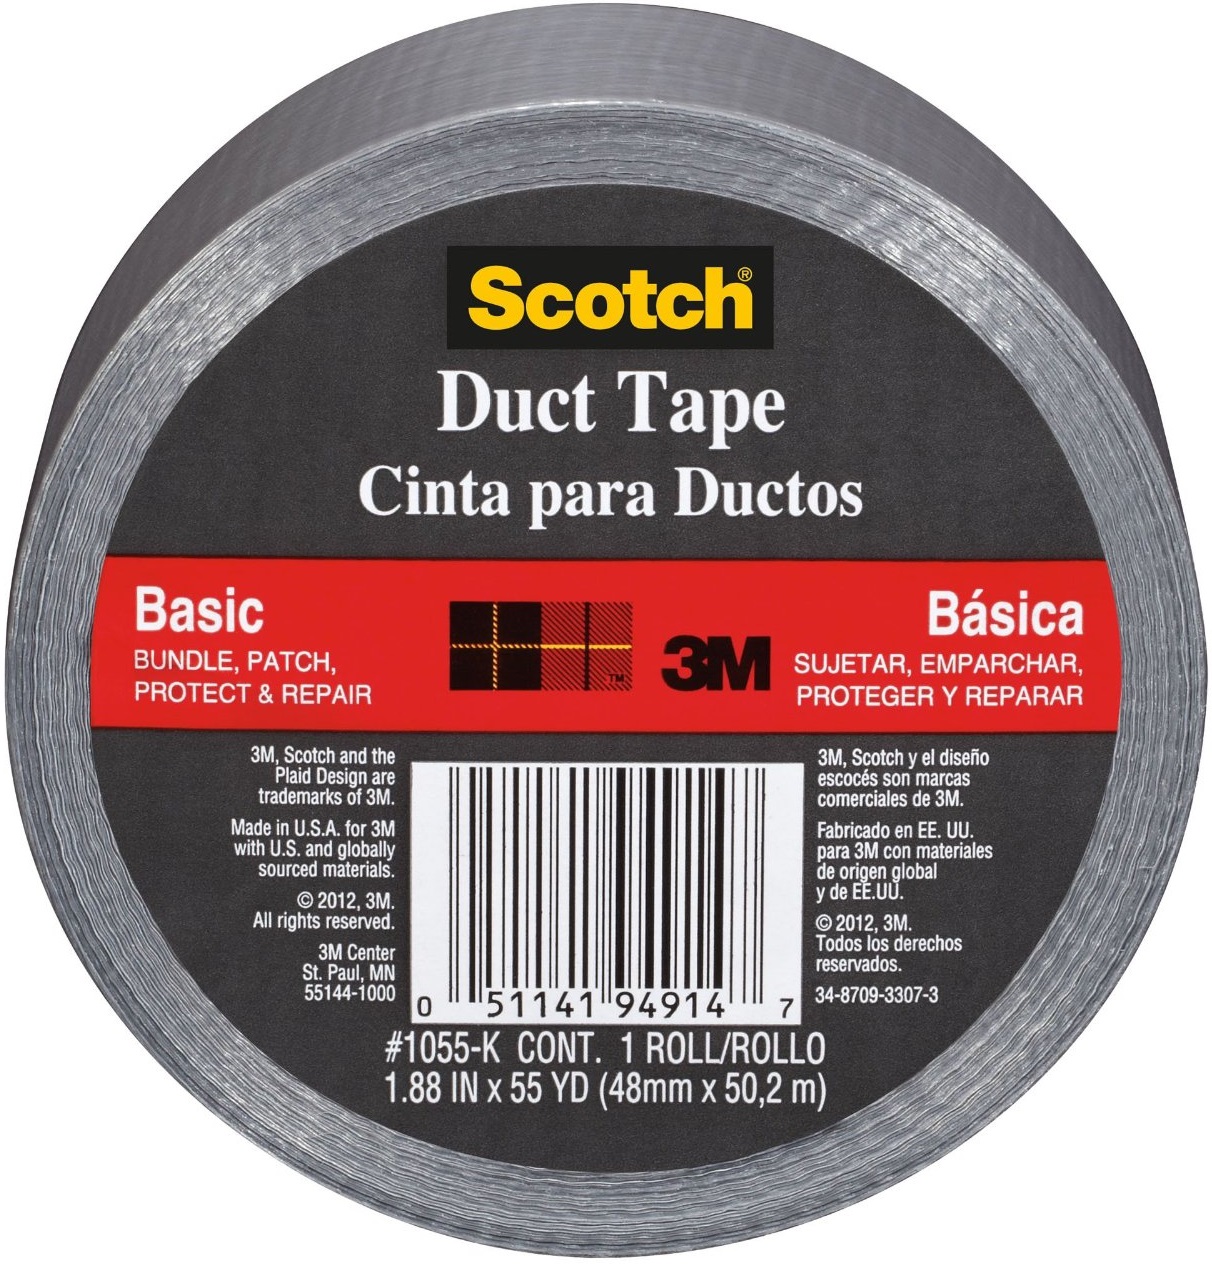 Scotch 1055 Basic Duct Tape, 1.88" x 55 yard